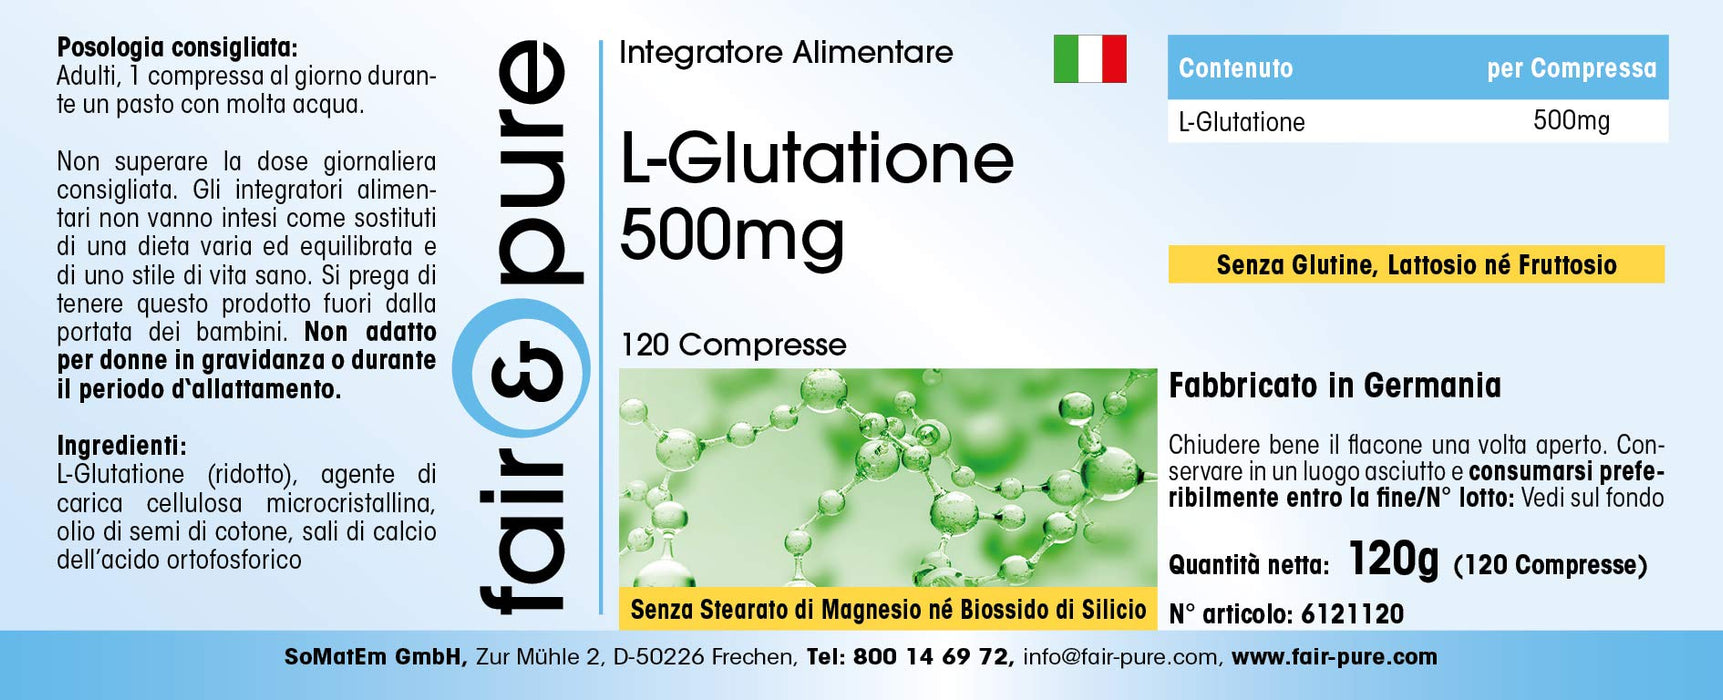 L-Glutation 500mg - zredukowany - wysoko dozowany - wegański - bez stearynianu magnezu - 120 tabletek L-Glutathione